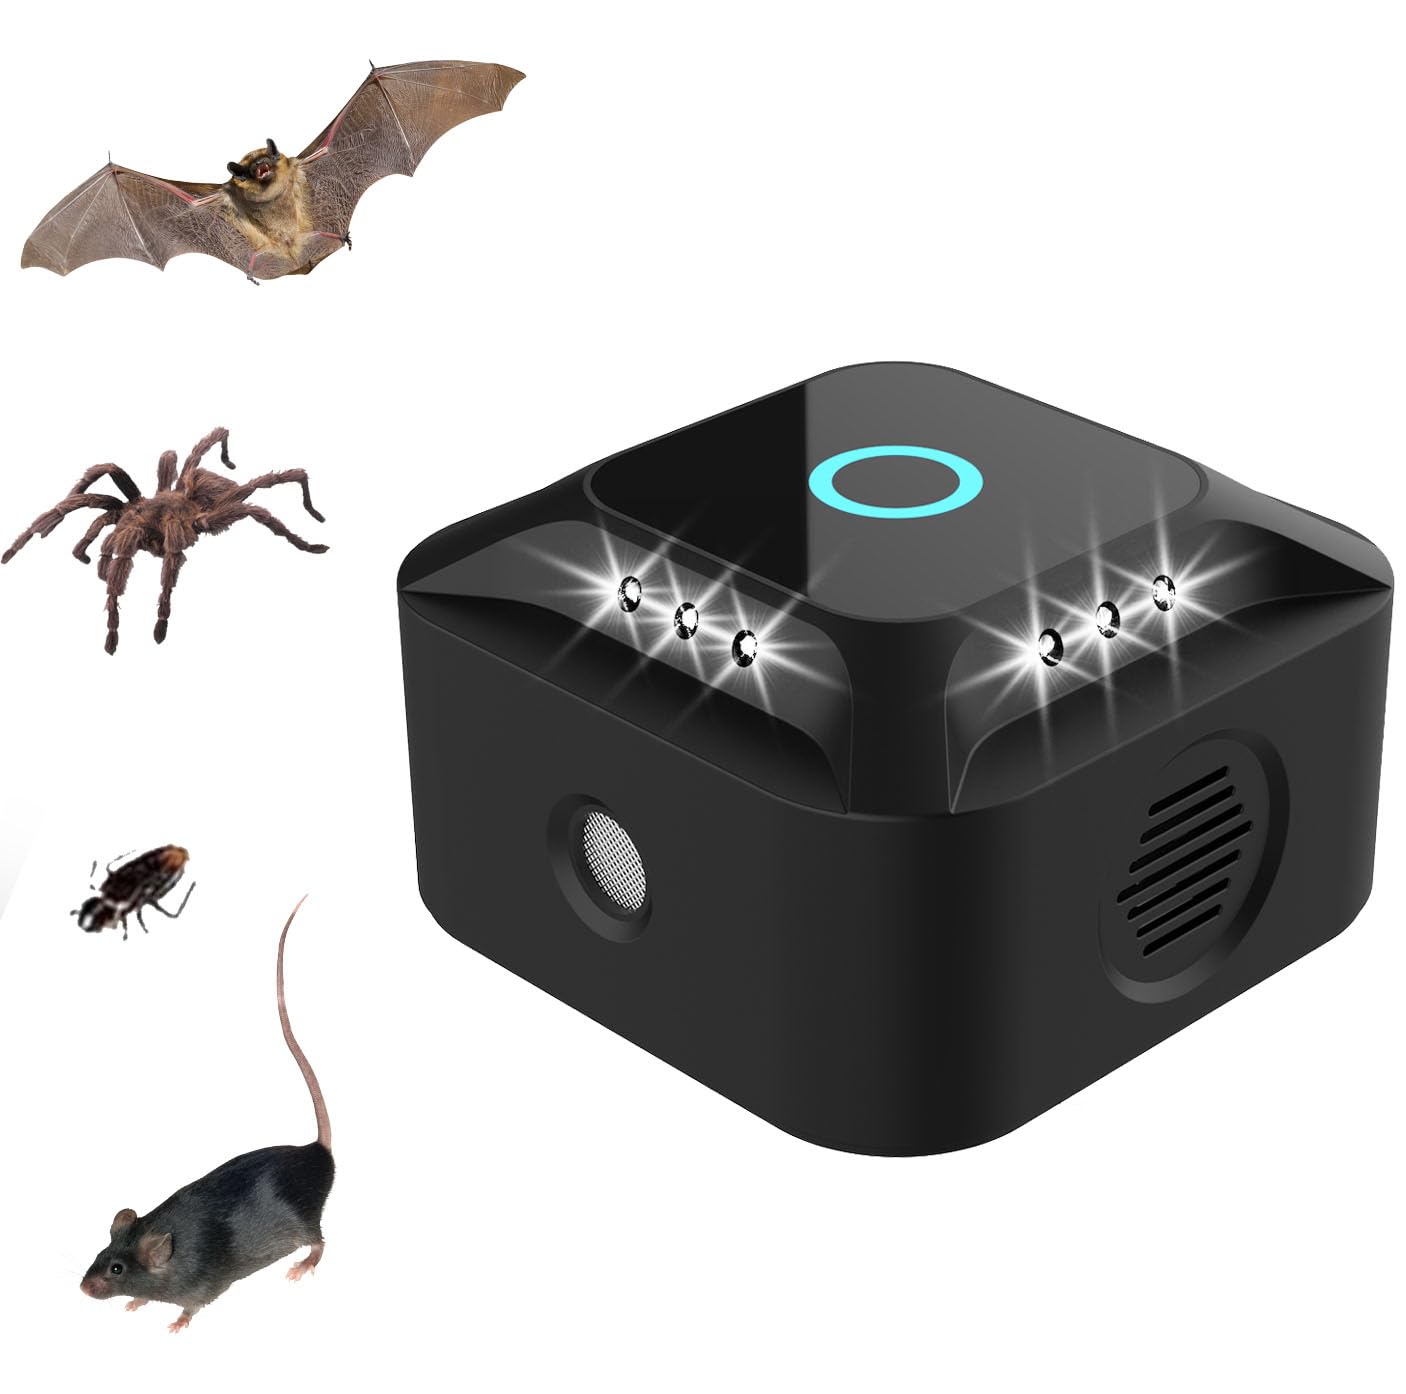 Ultraschall für Ratten, Ultraschall Mäuse und Ratten, 360° mit LED-Licht, Ultraschall-Abwehrmittel für Mäuse, Nagetiere, Schädlinge, Innenbereich, Plug-in Kakerlaken, Schädlingsbekämpfung für Garten